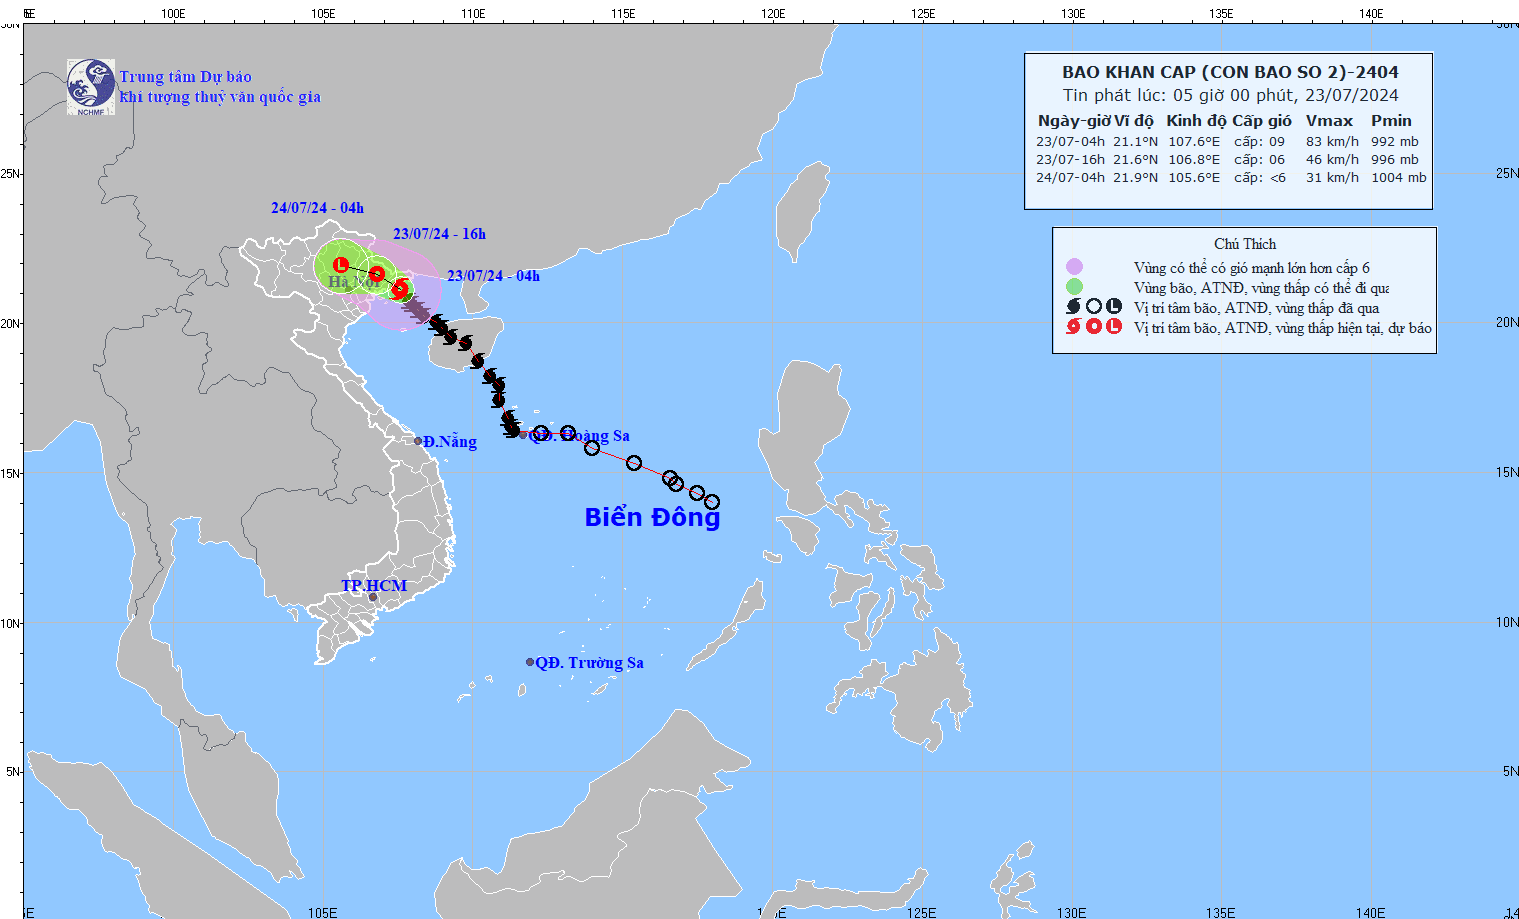 Dự báo bão số 2: Các tỉnh từ Quảng Ninh đến Nam Định triều cường cao, gây ngập vùng trũng, thấp ven biển, ven sông